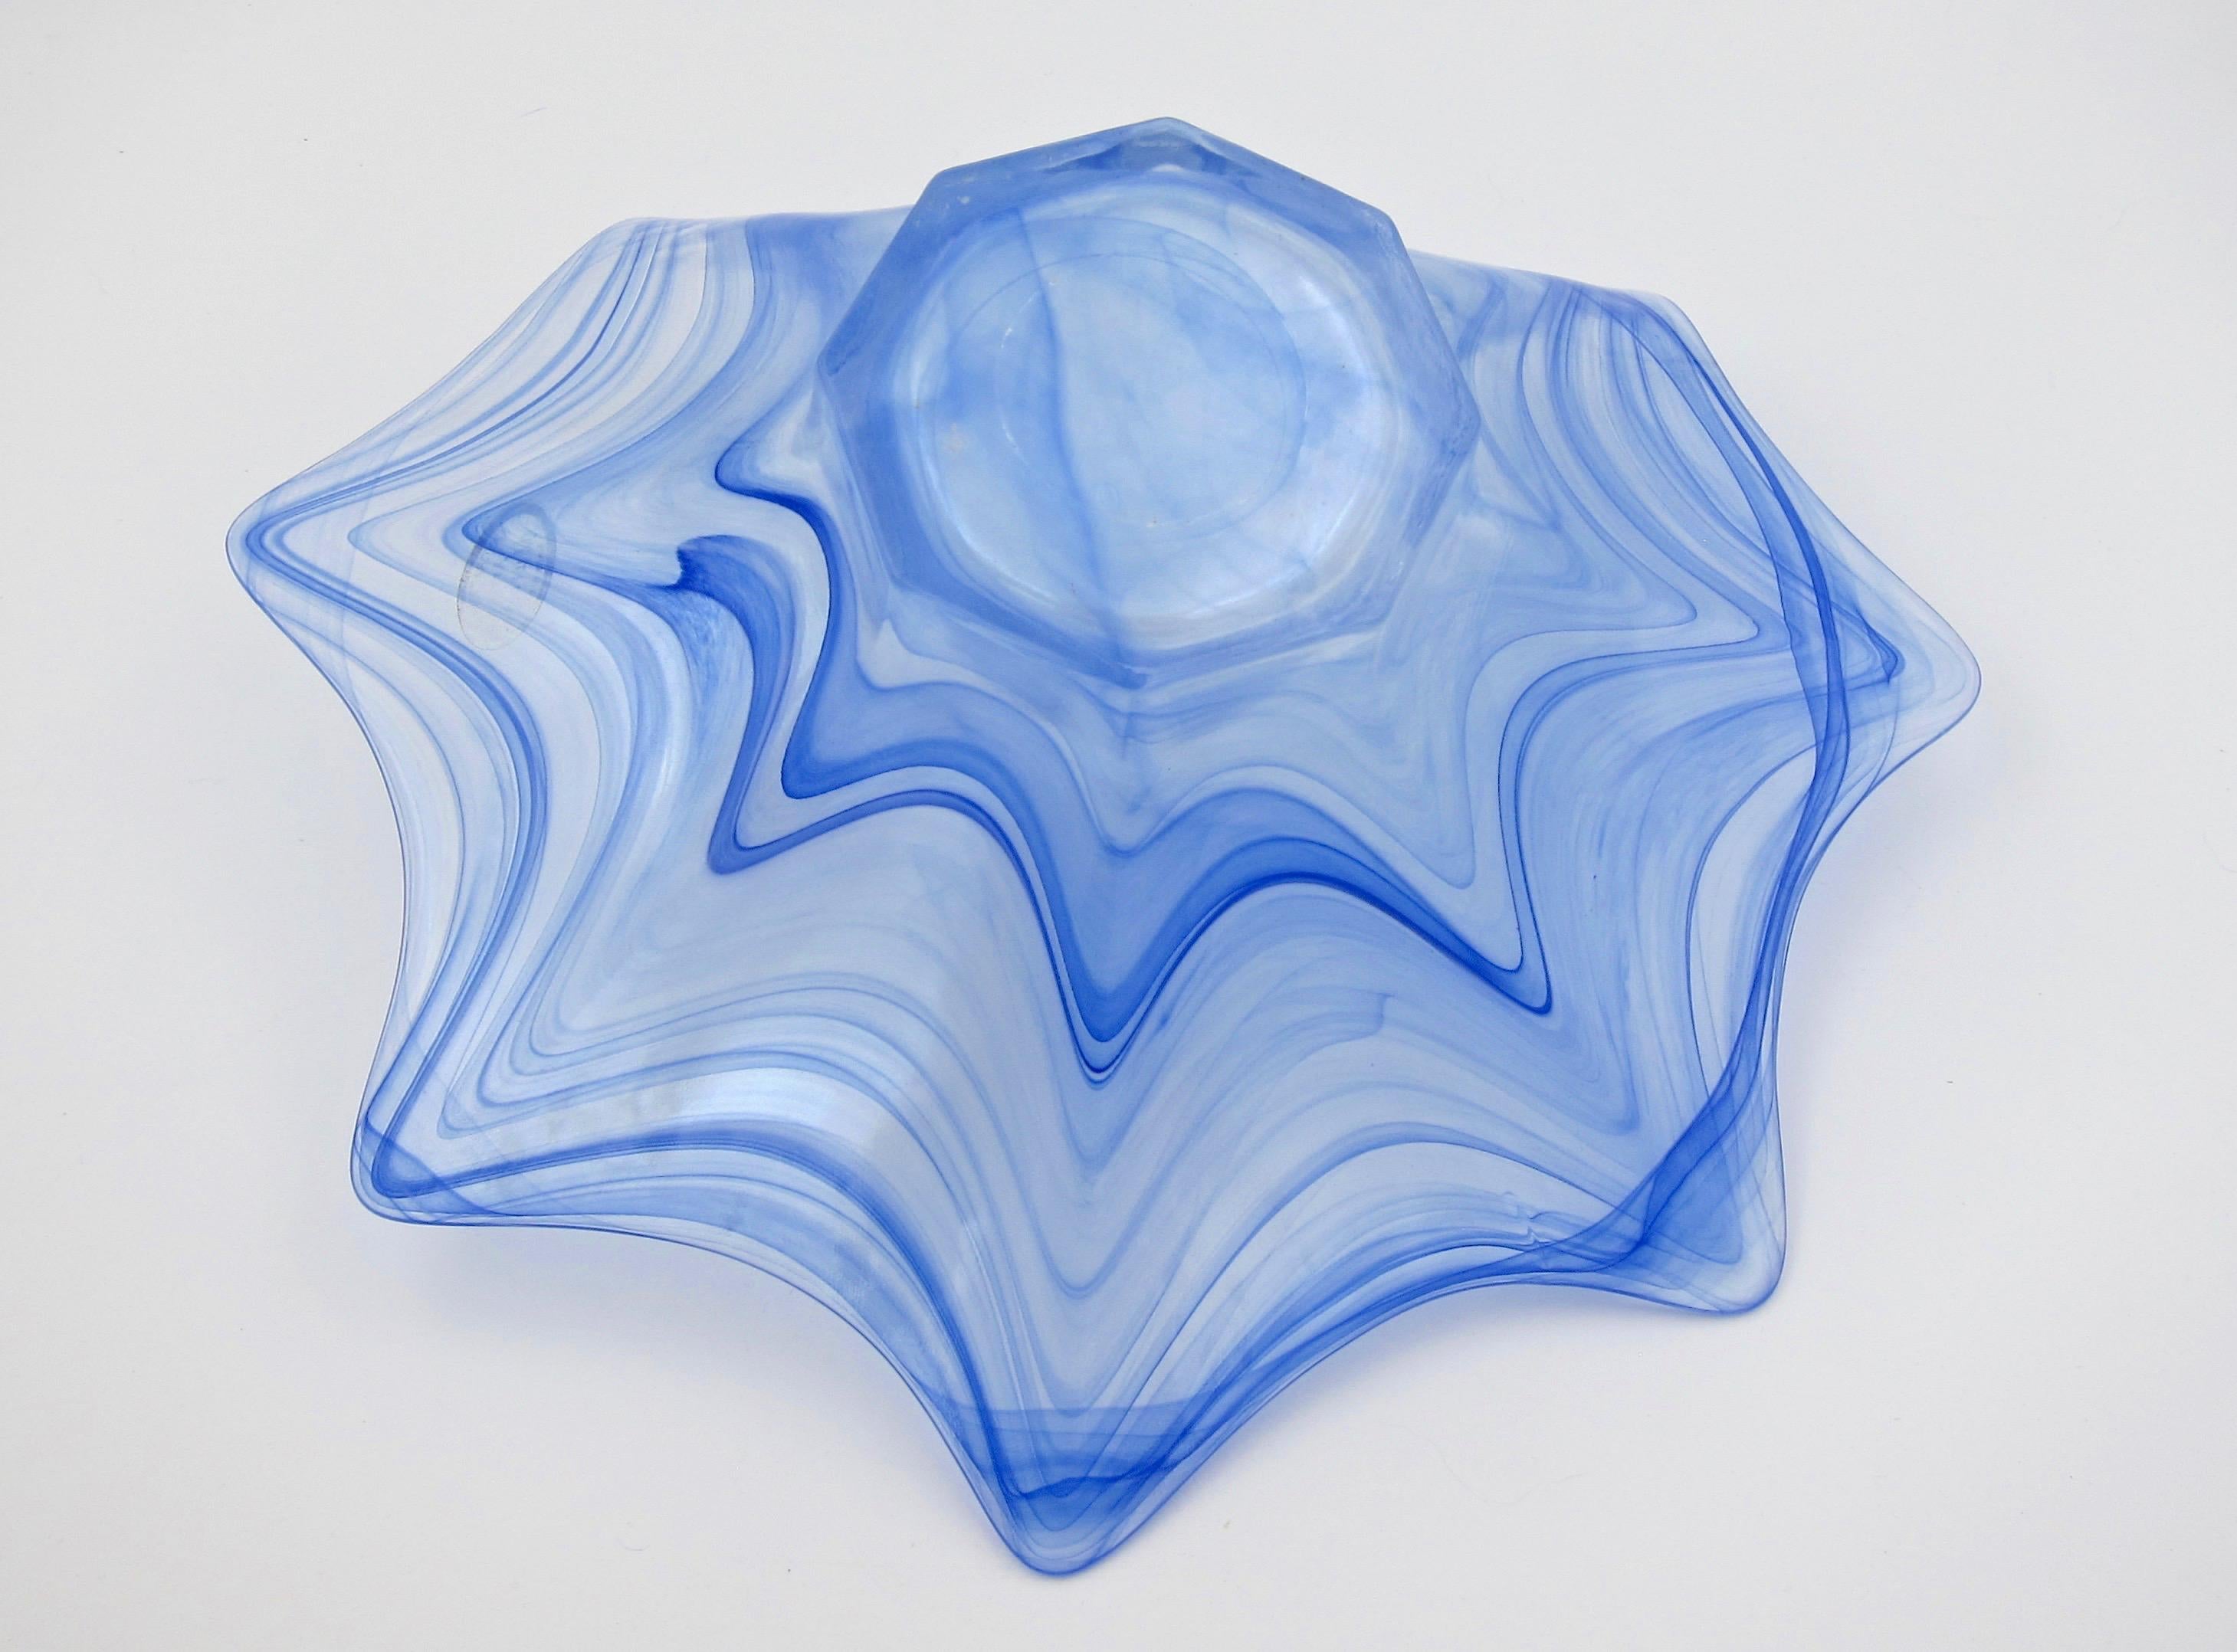 20th Century Italian Lavorazione Arte Murano Glass Bowl with Iridescence